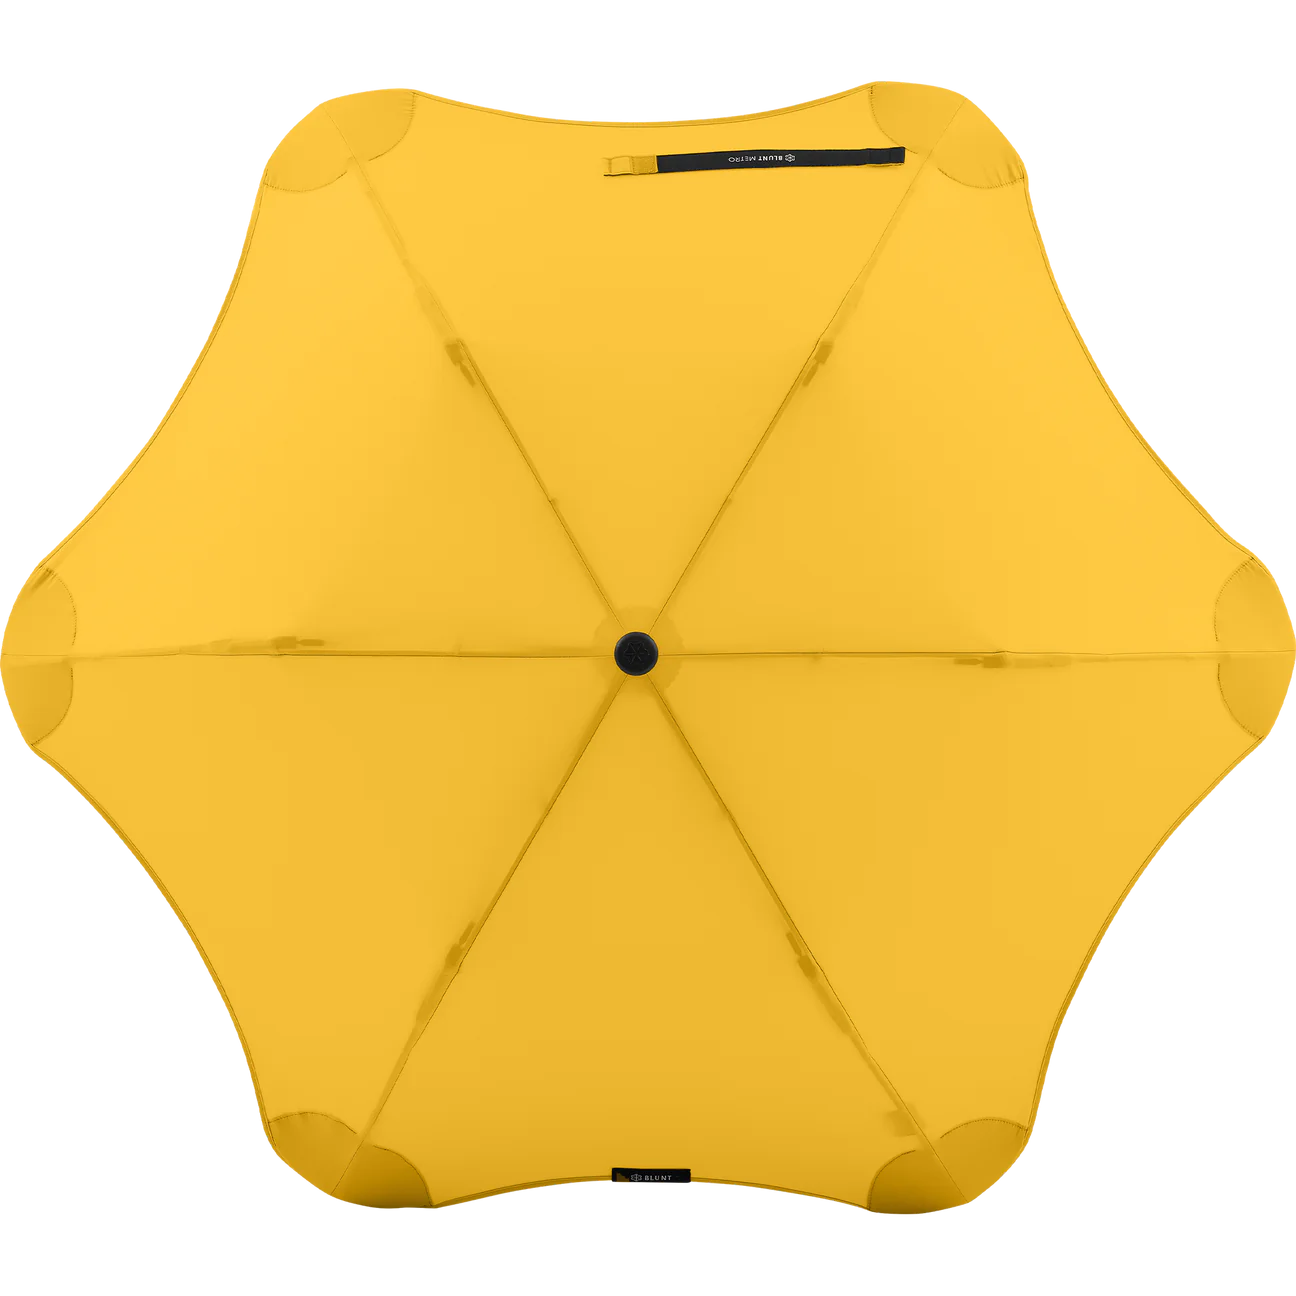 Blunt Metro Umbrella 100cm - yellow